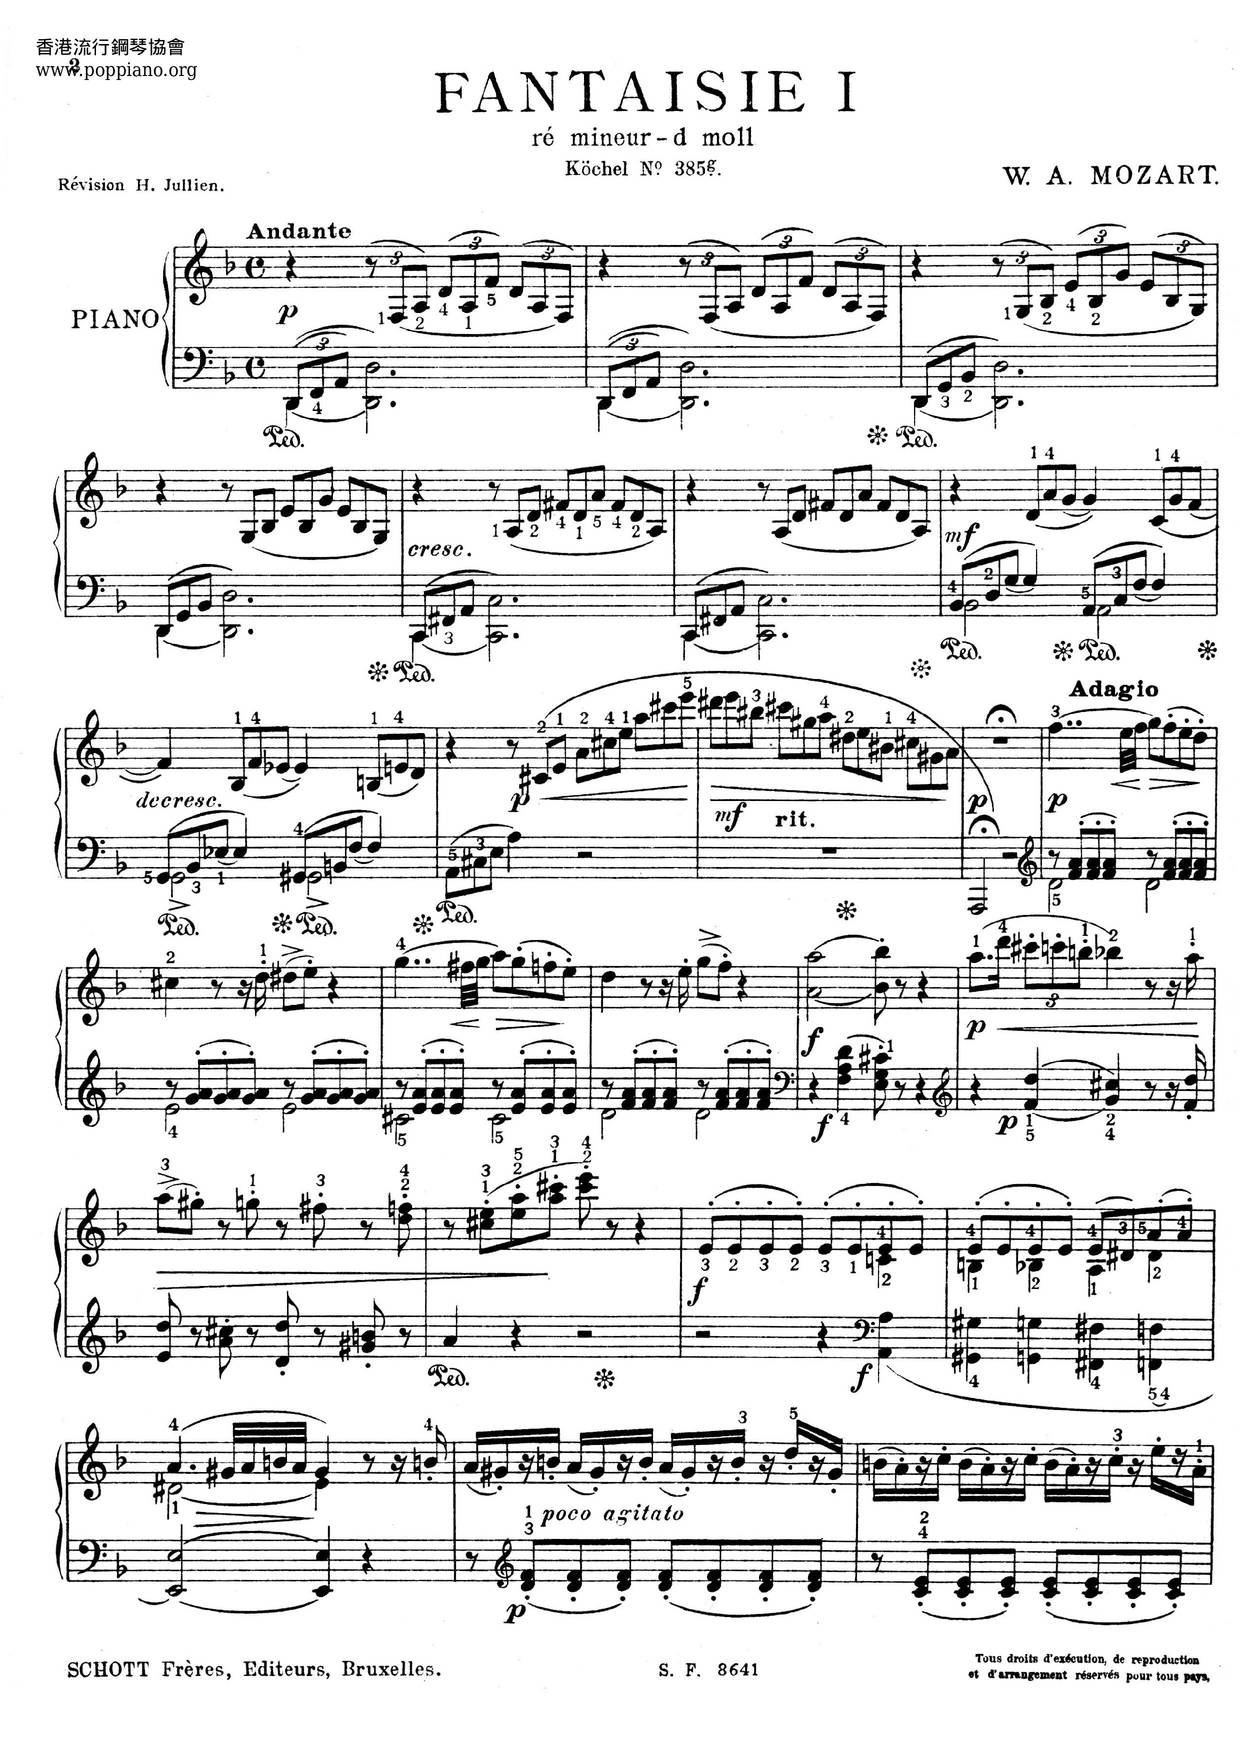 Fantasia In D Minor, K. 397琴譜